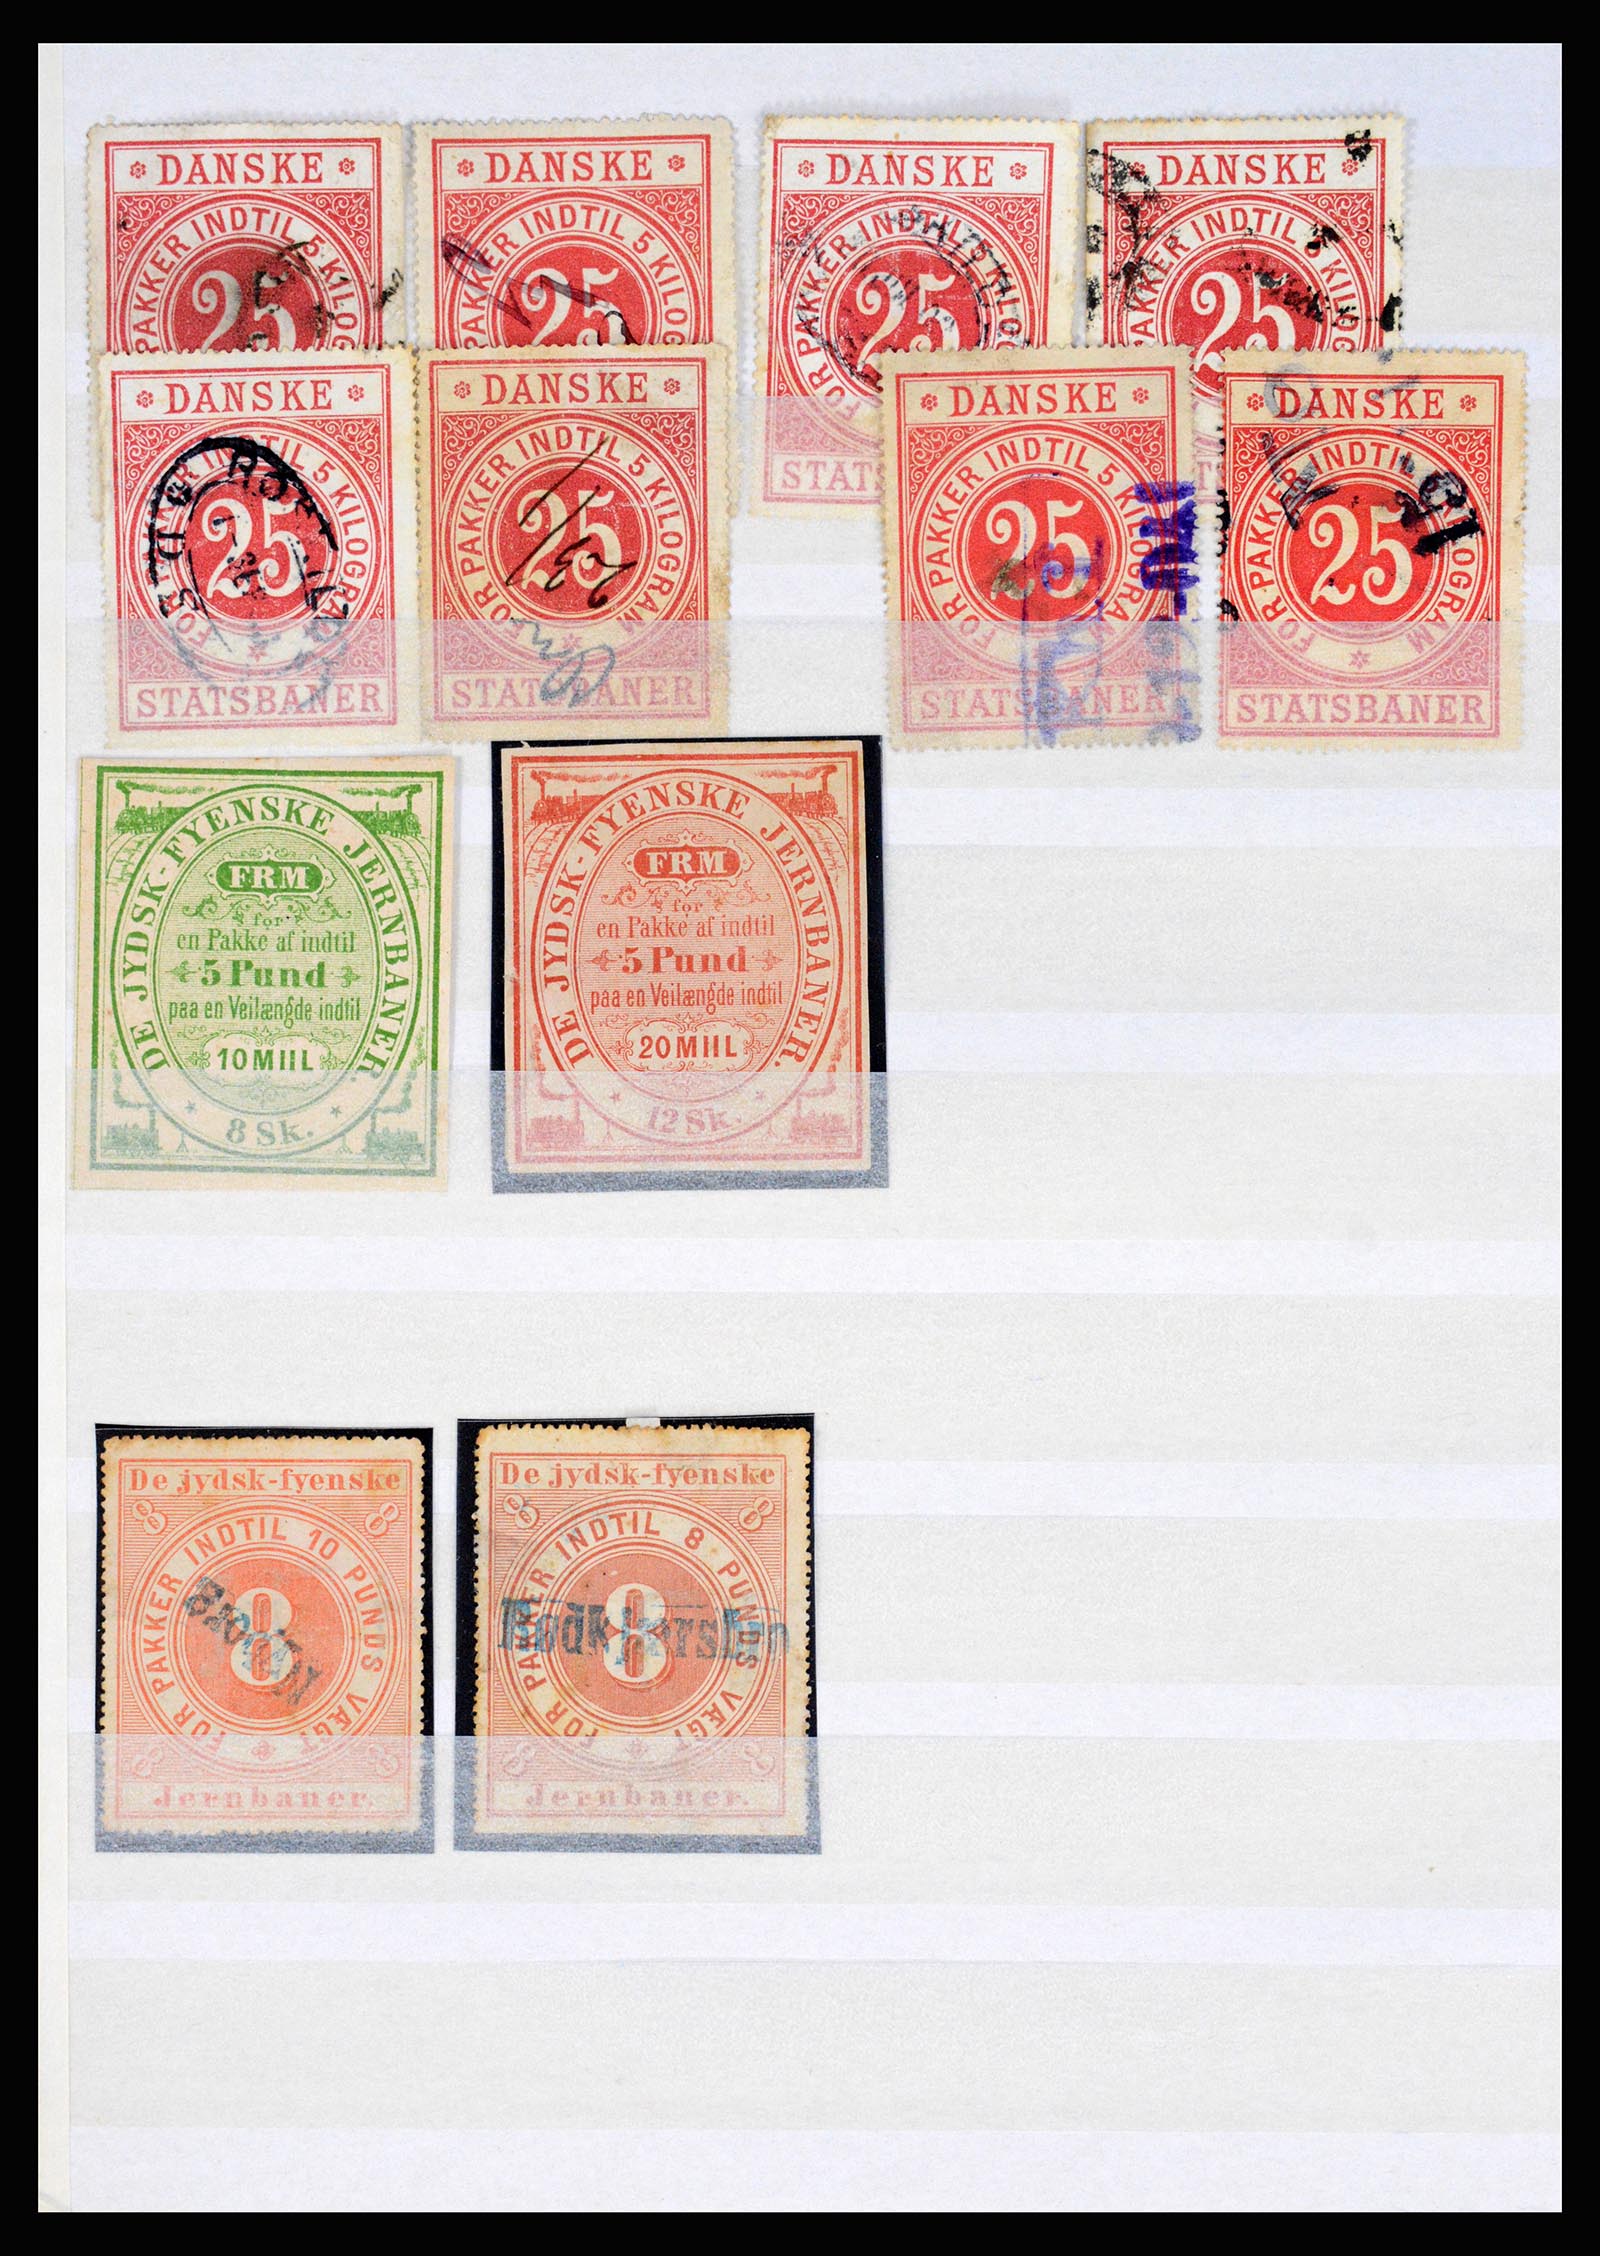 36982 002 - Postzegelverzameling 36982 Denemarken spoorwegzegels.